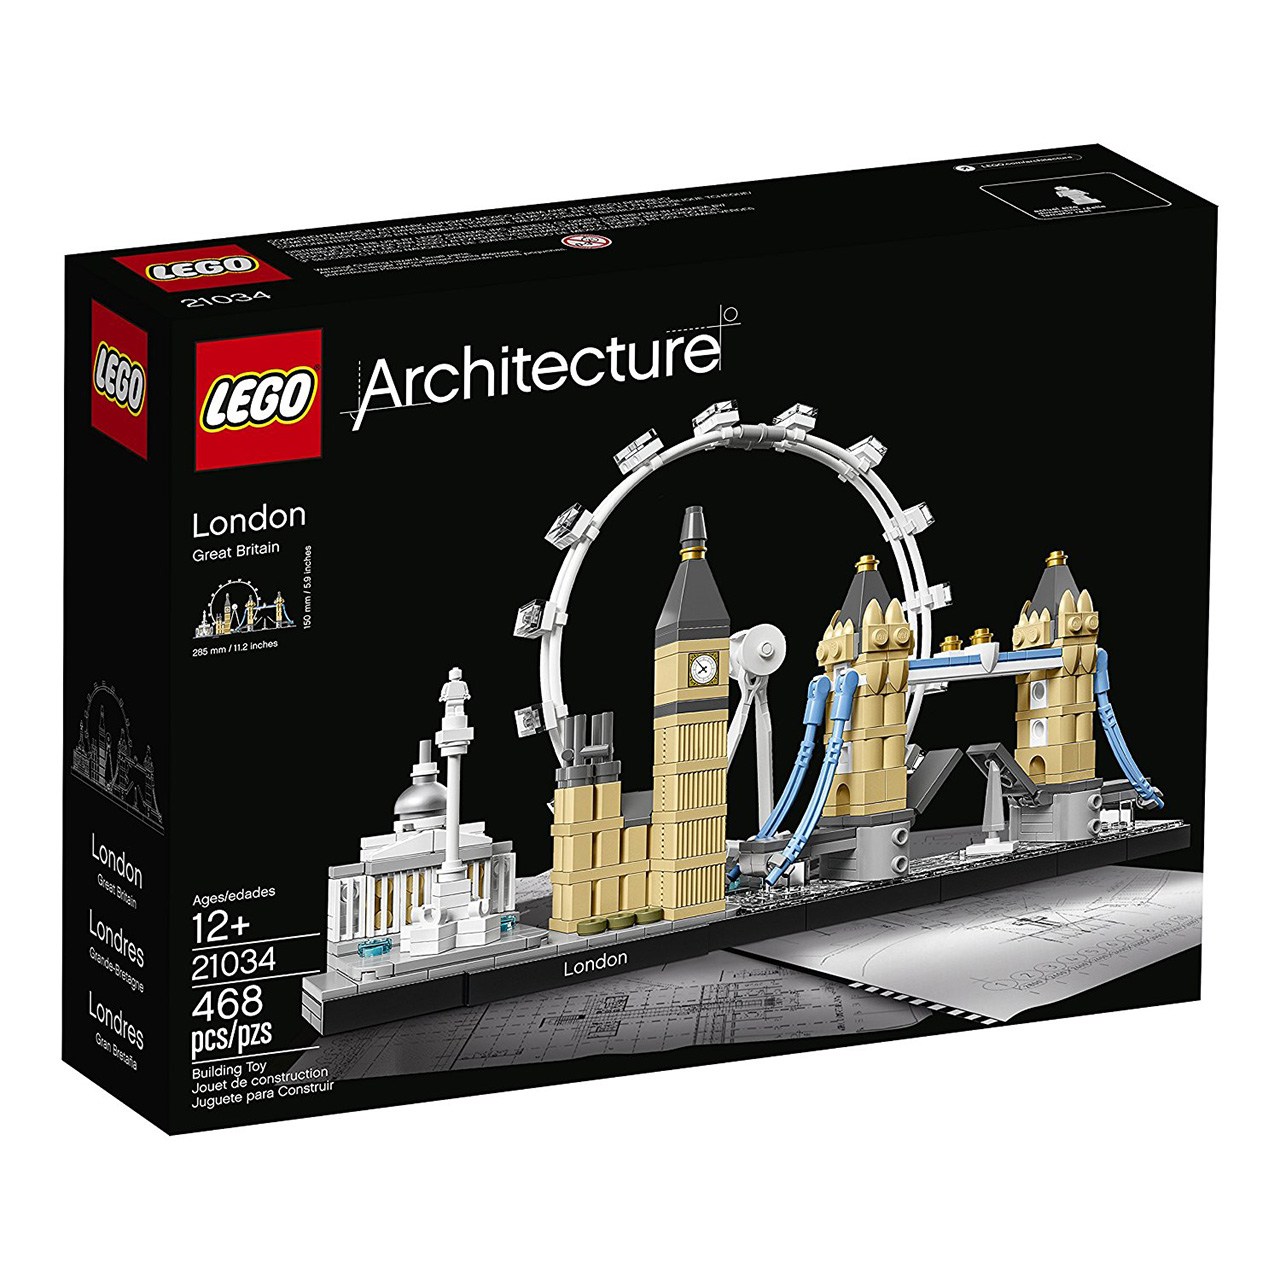 لگو سری Architecture  مدل London 21034